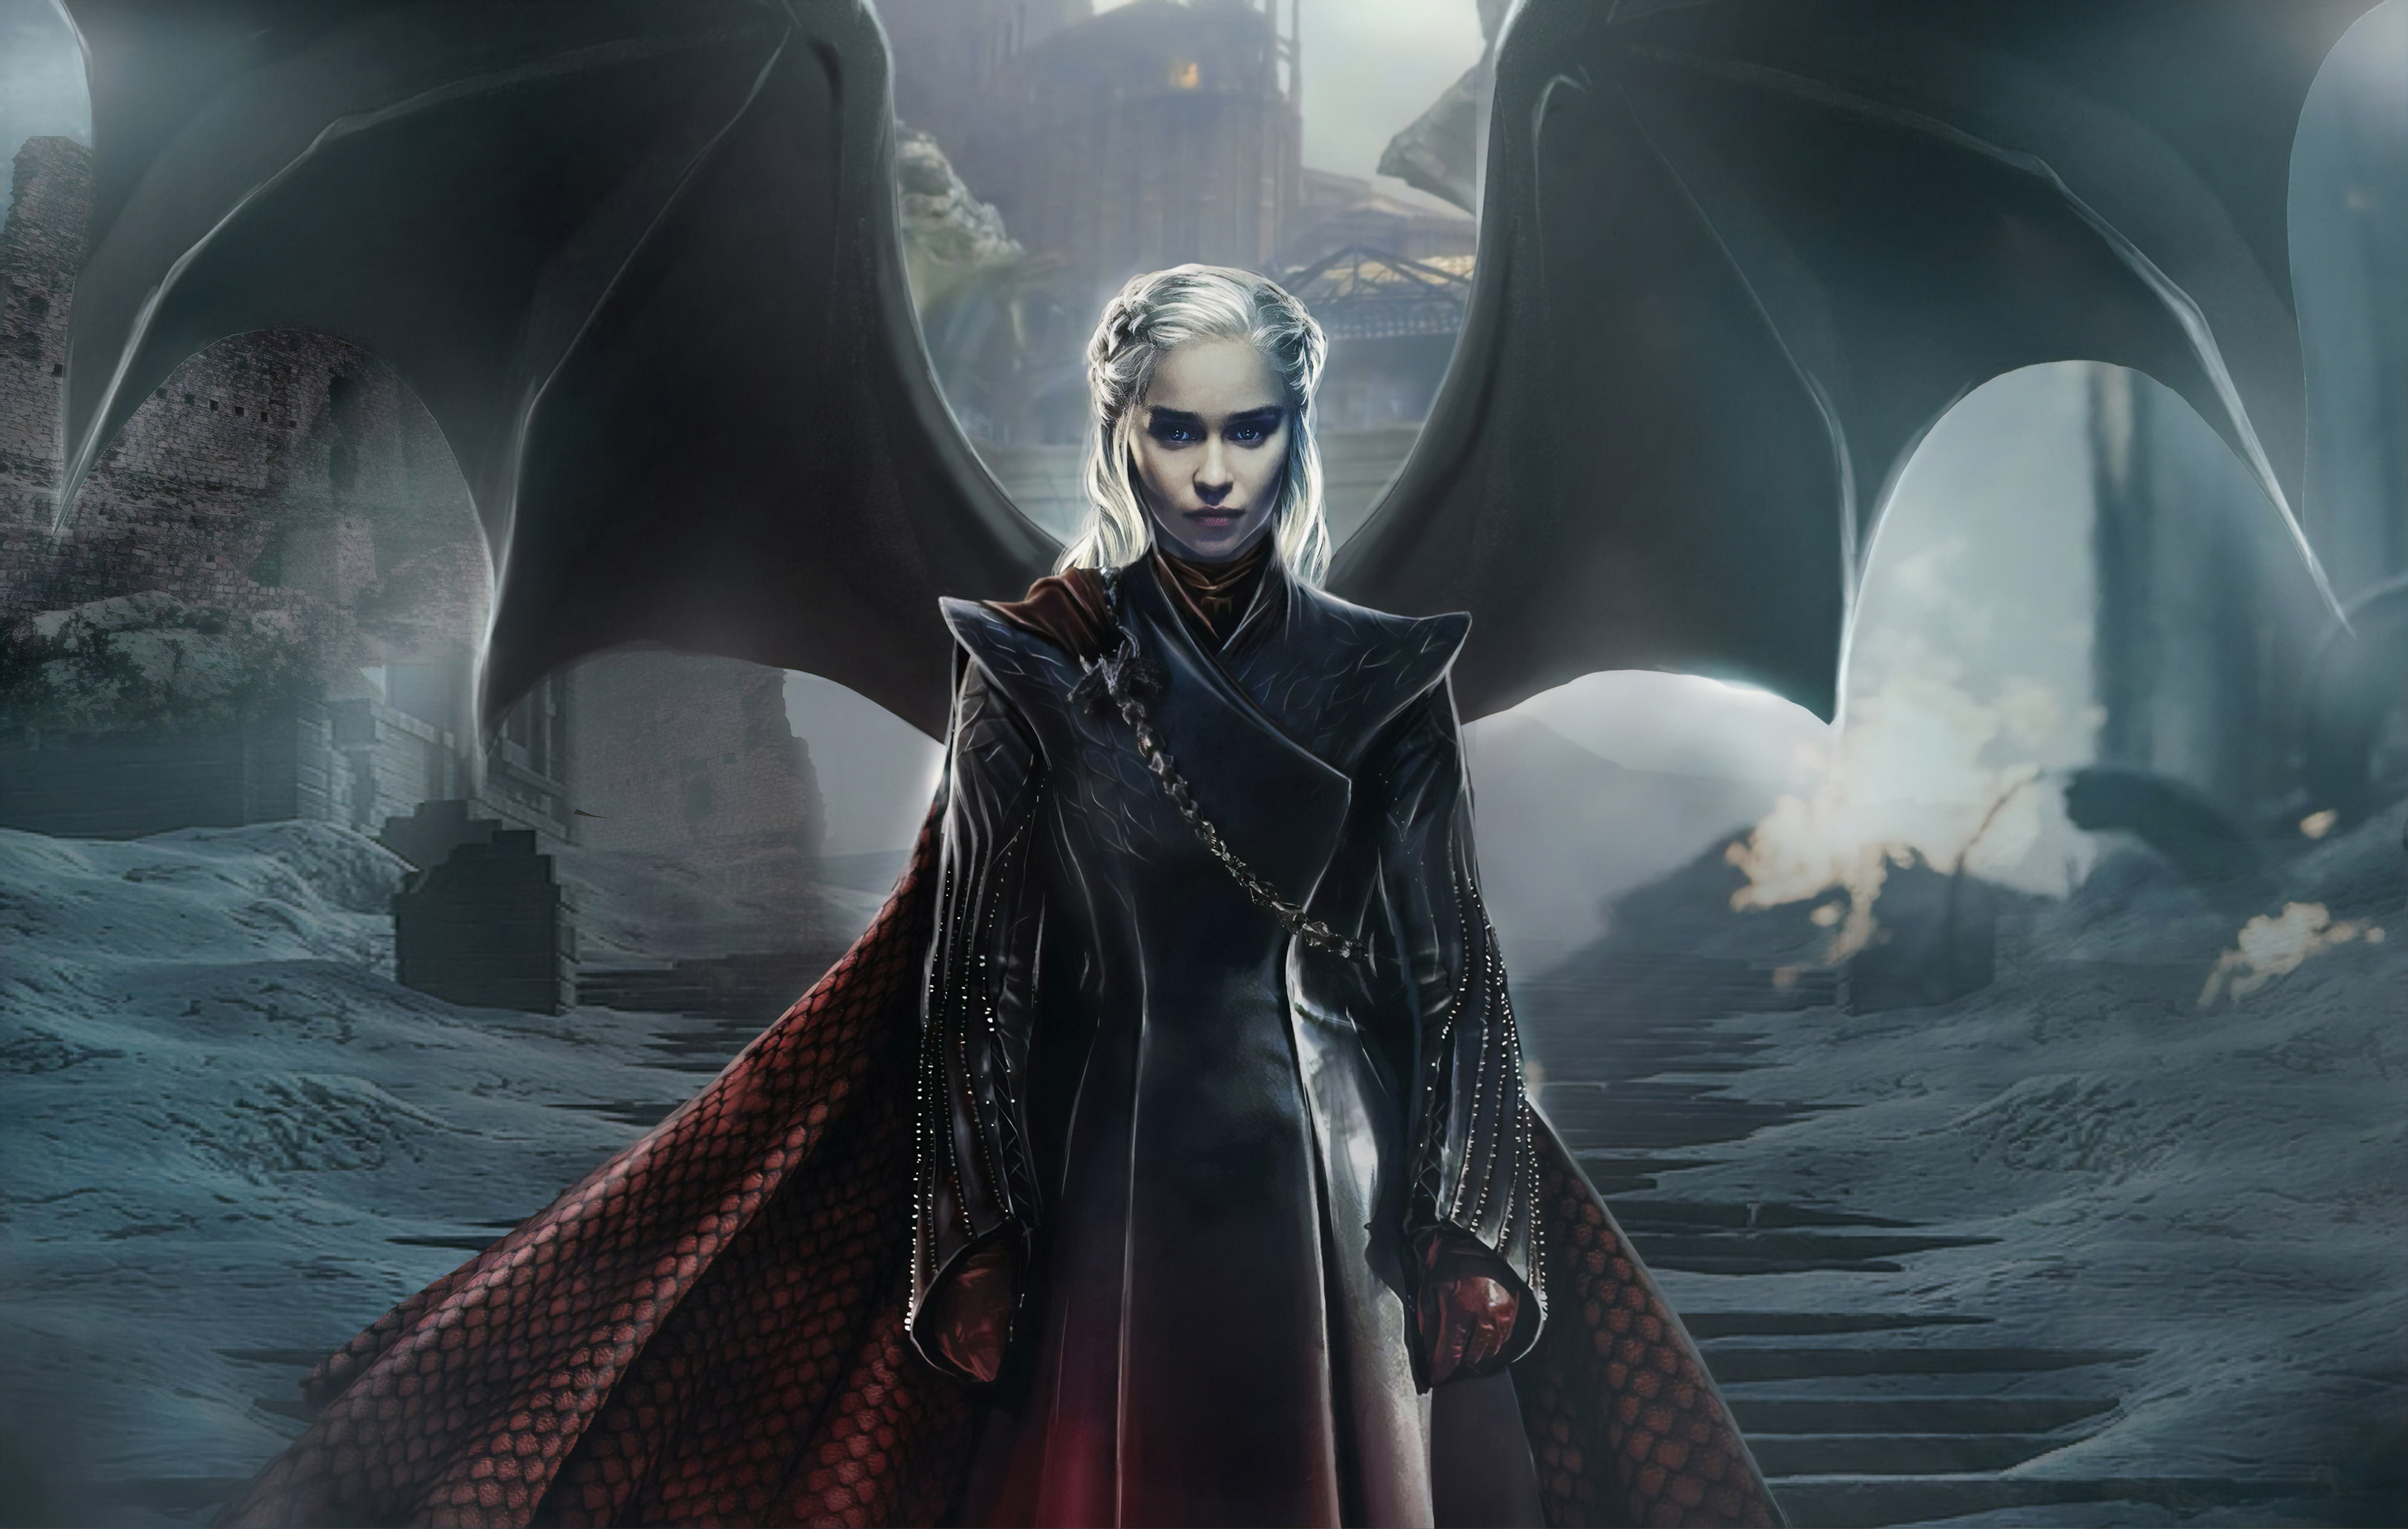 daenerys wallpaper hd,cg artwork,gioco di avventura e azione,personaggio fittizio,buio,demone